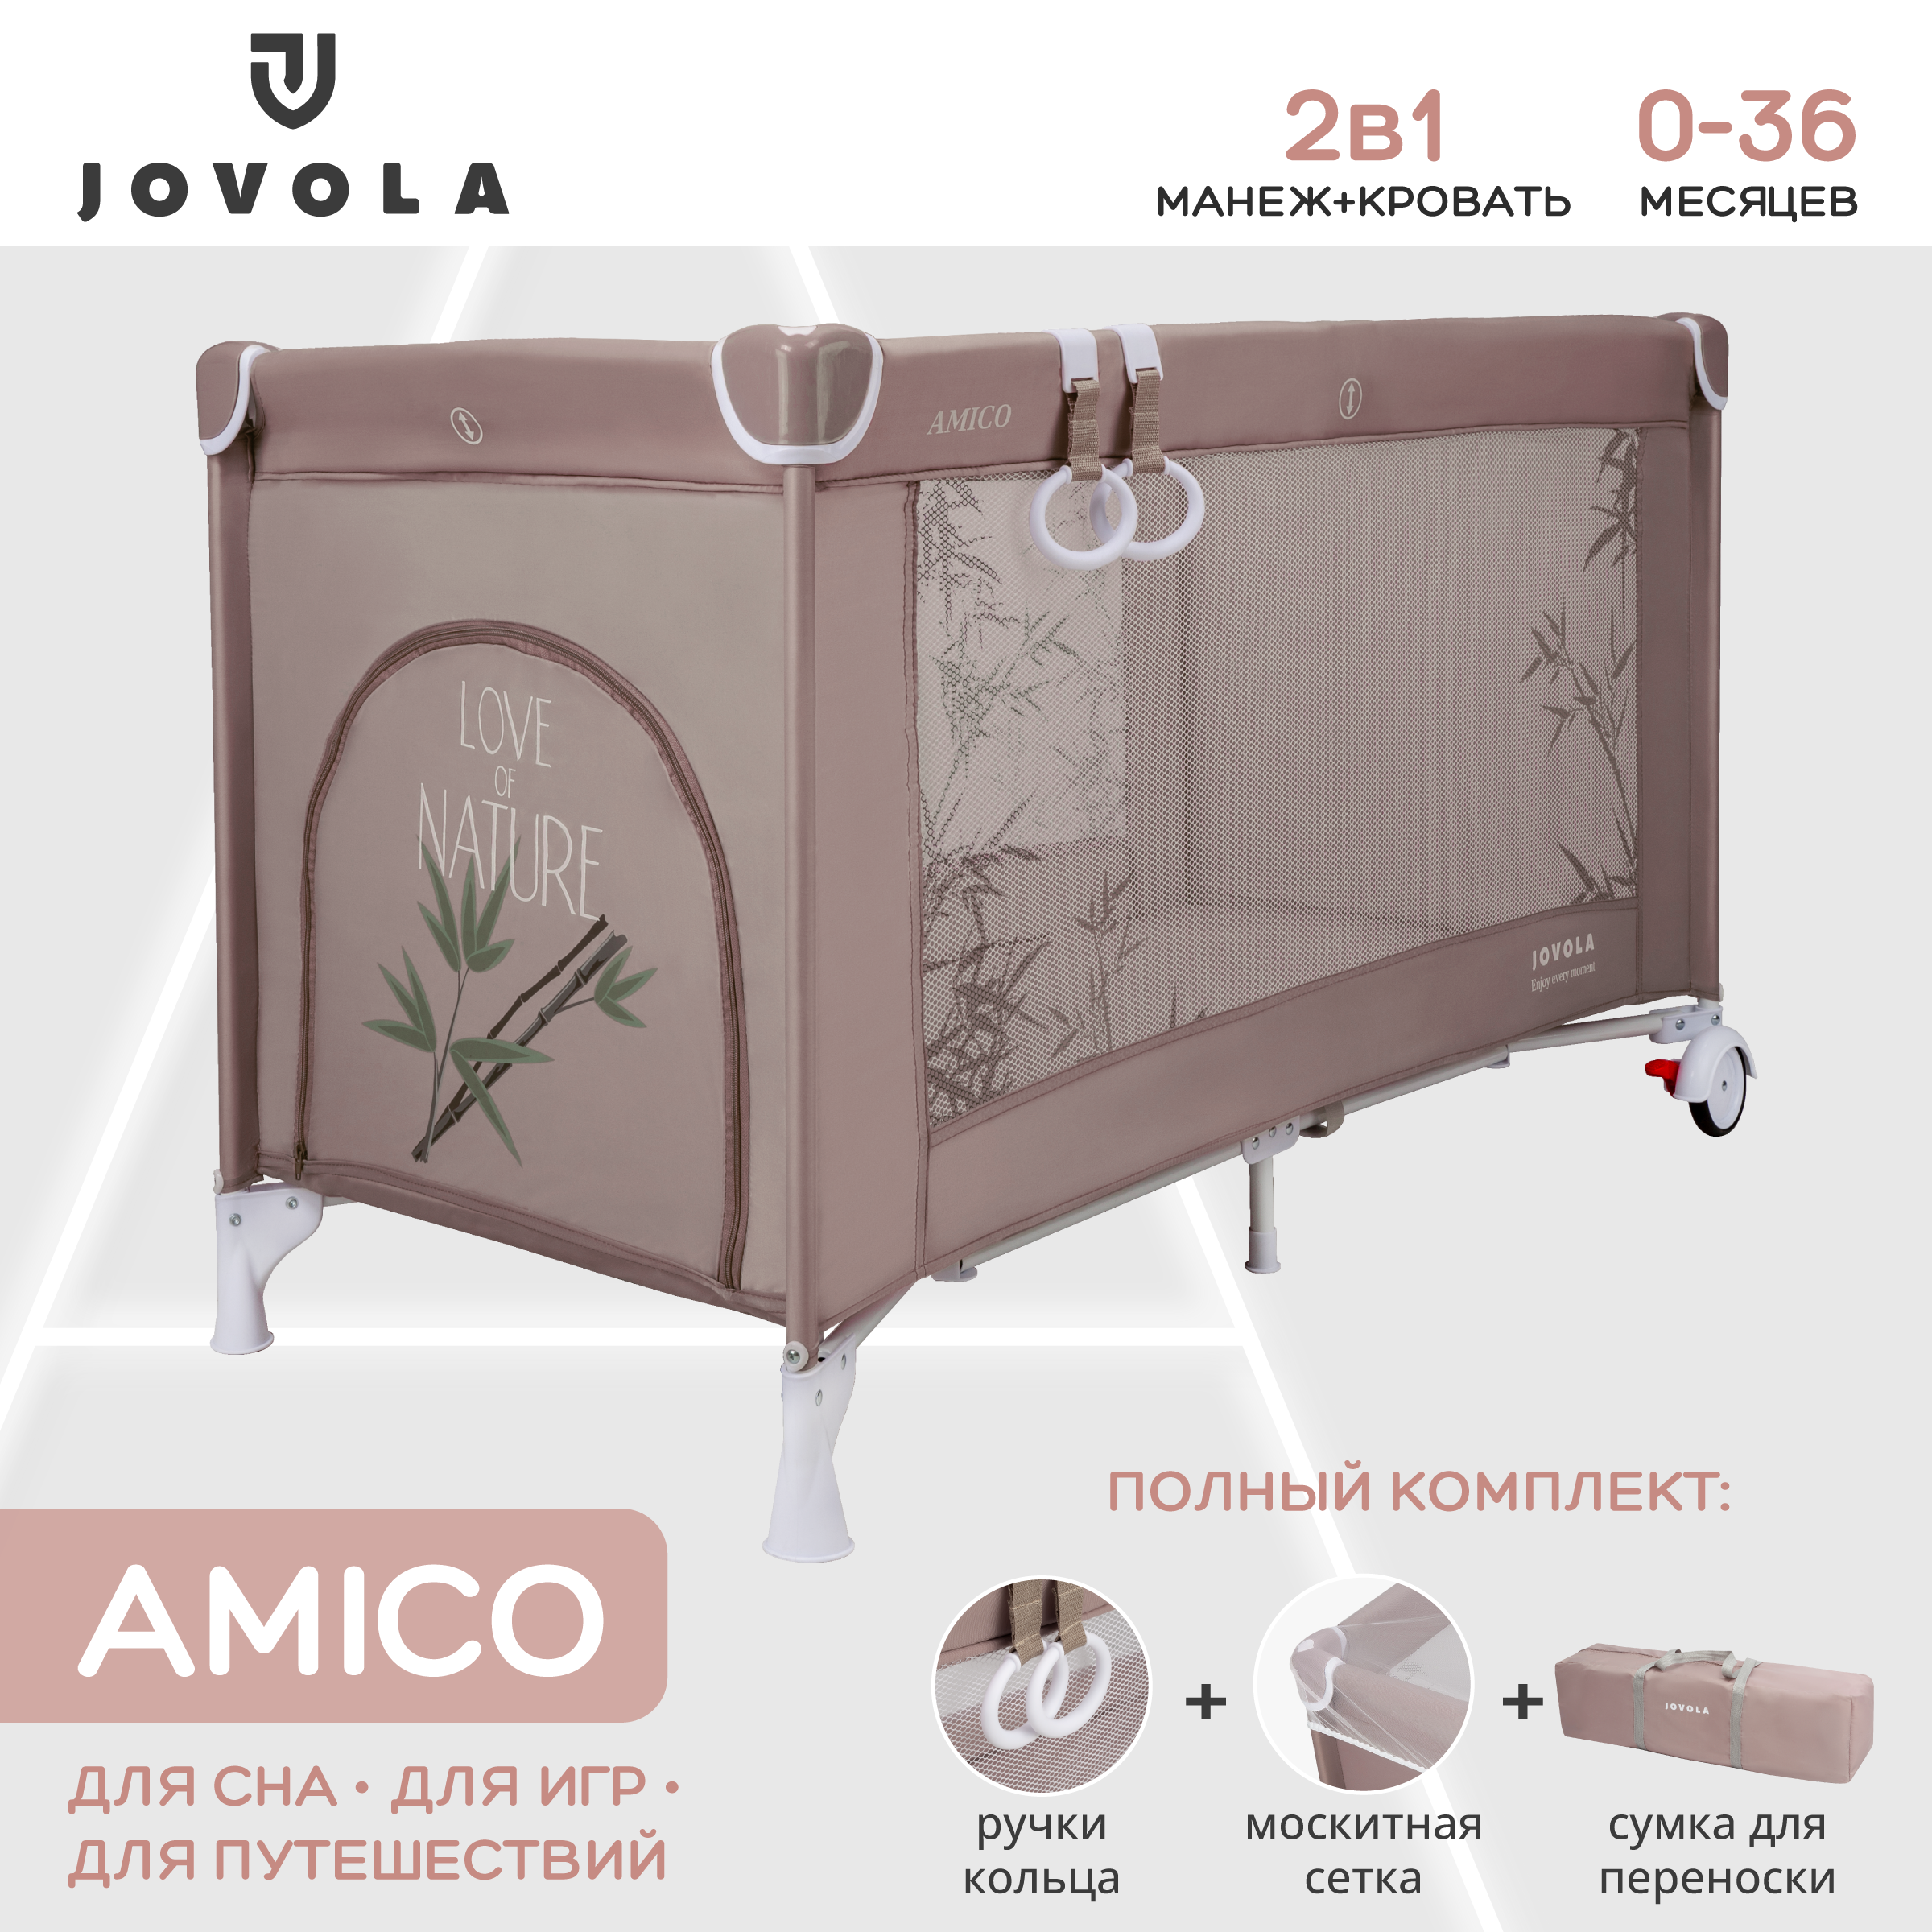 Манеж кровать детский Indigo JOVOLA AMICO складной 1 уровень мокко бамбук